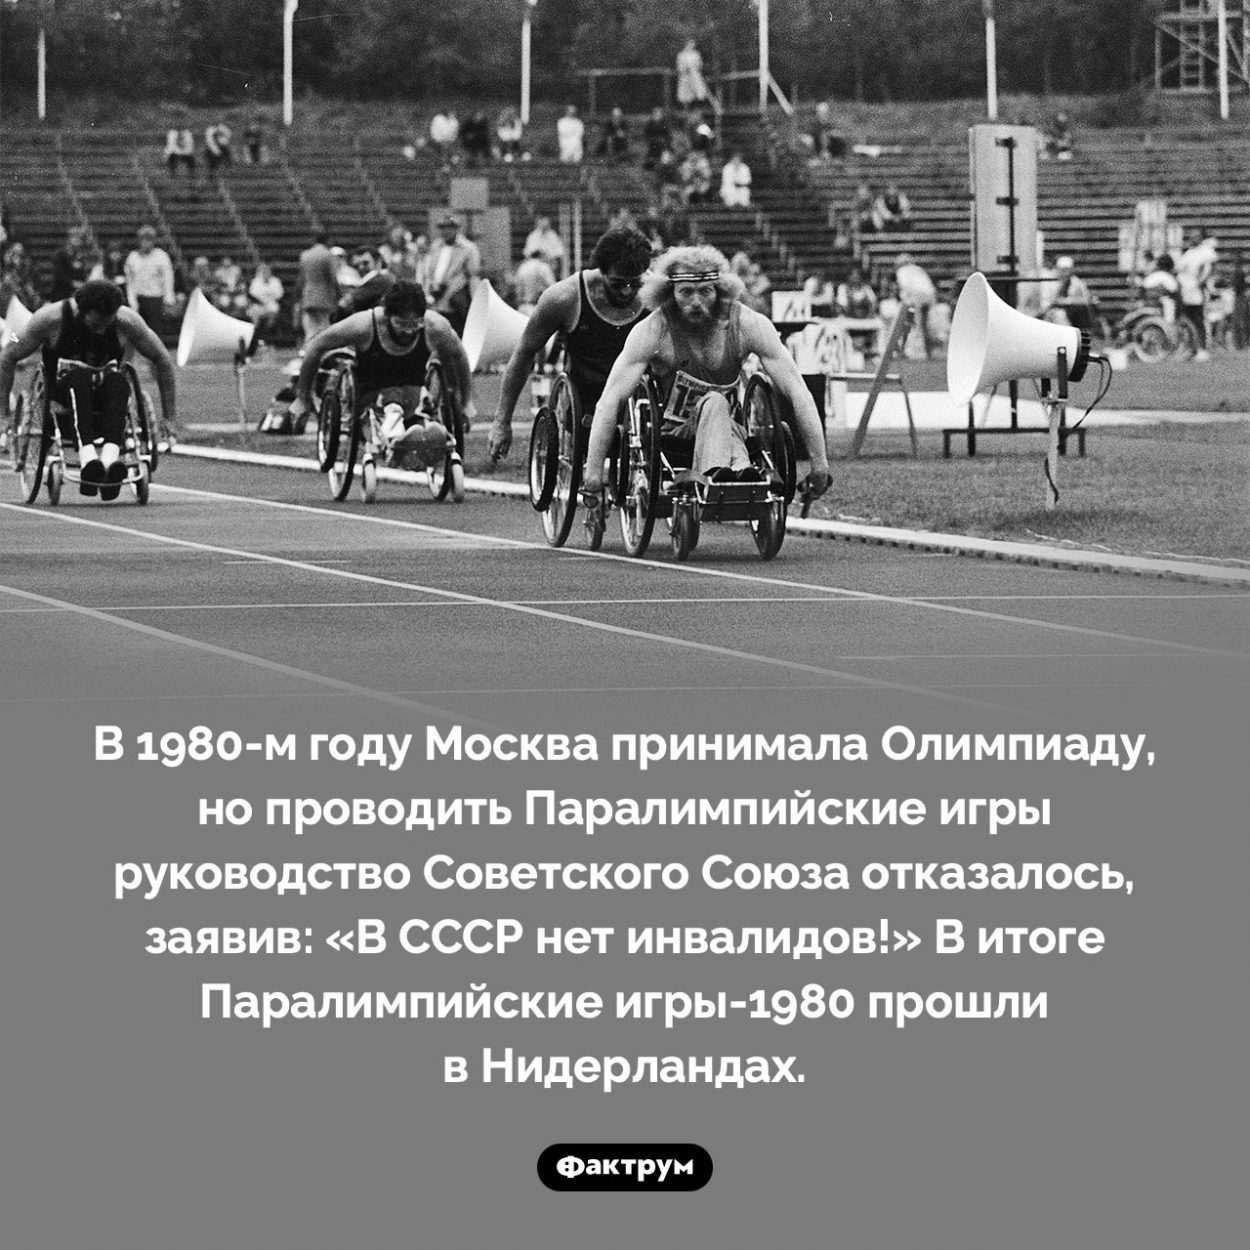 Принимая Олимпиаду, Москва отказалась проводить Паралимпиаду. В 1980-м году Москва принимала Олимпиаду, но проводить Паралимпийские игры руководство Советского Союза отказалось, заявив: «В СССР нет инвалидов!» В итоге Паралимпийские игры-1980 прошли в Нидерландах.